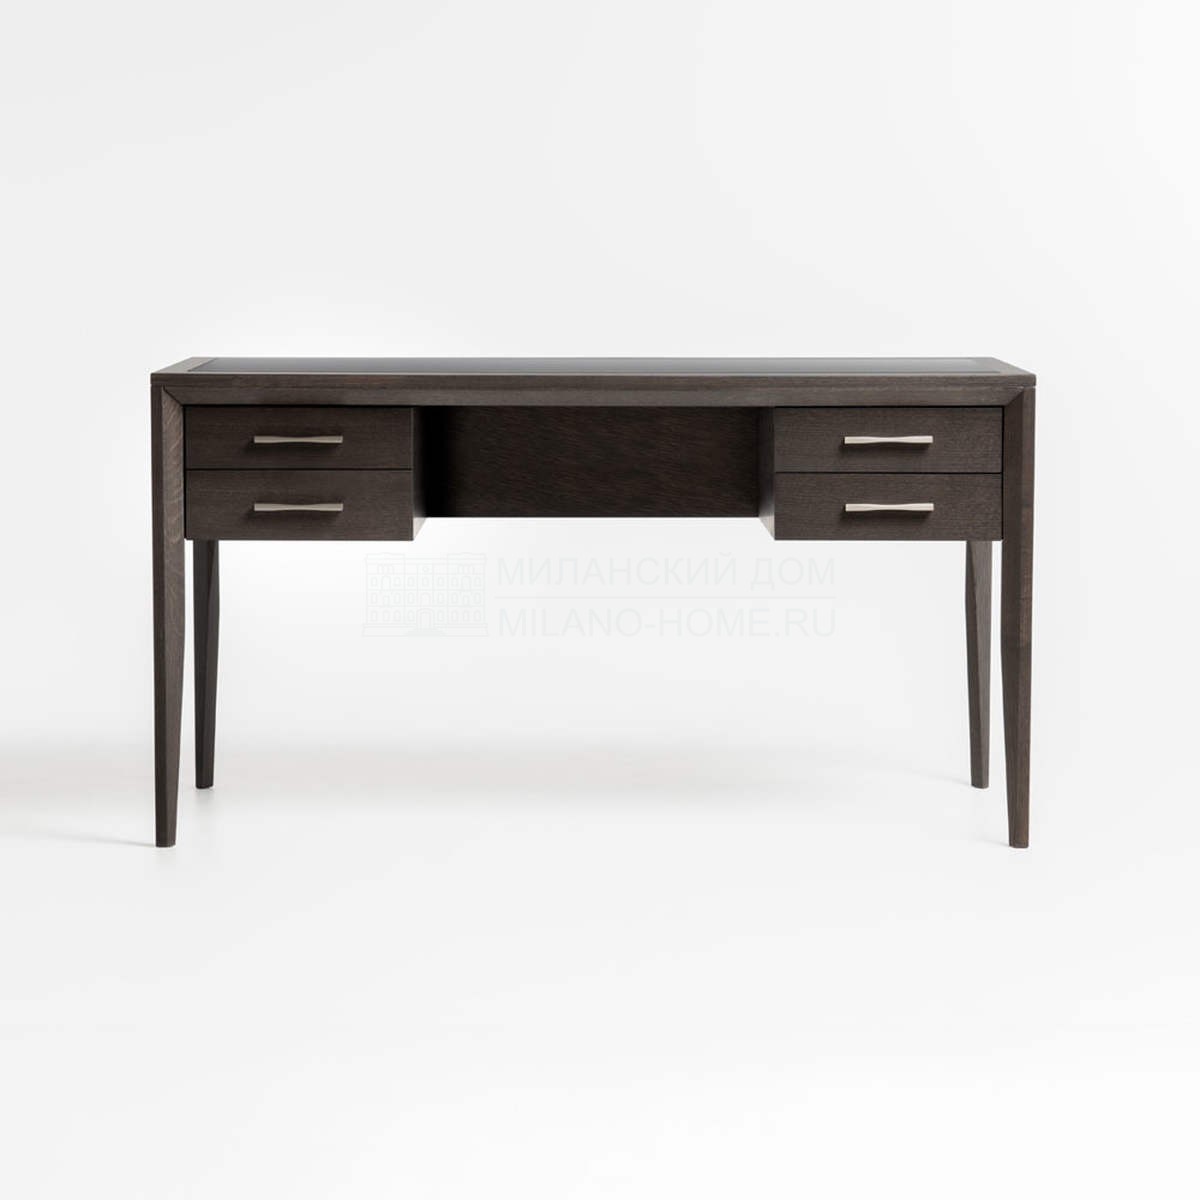 Письменный стол Club desk 4 drawers из Италии фабрики TOSCONOVA